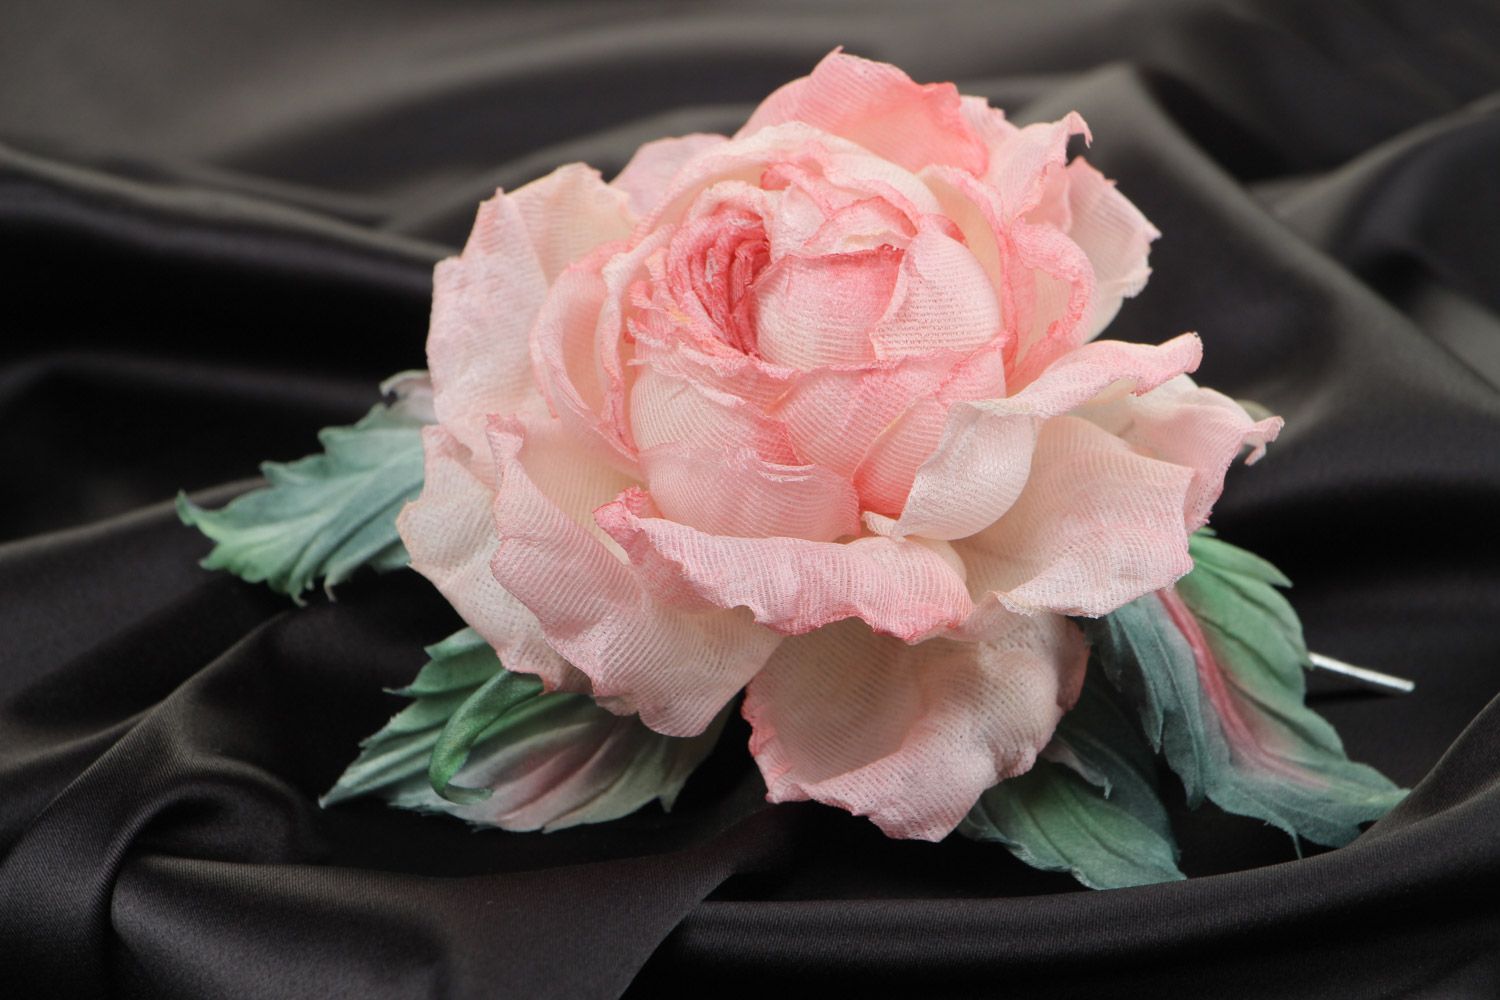 Брошь в виде розы крупная розовая романтичная изящная красивая ручной работы фото 1